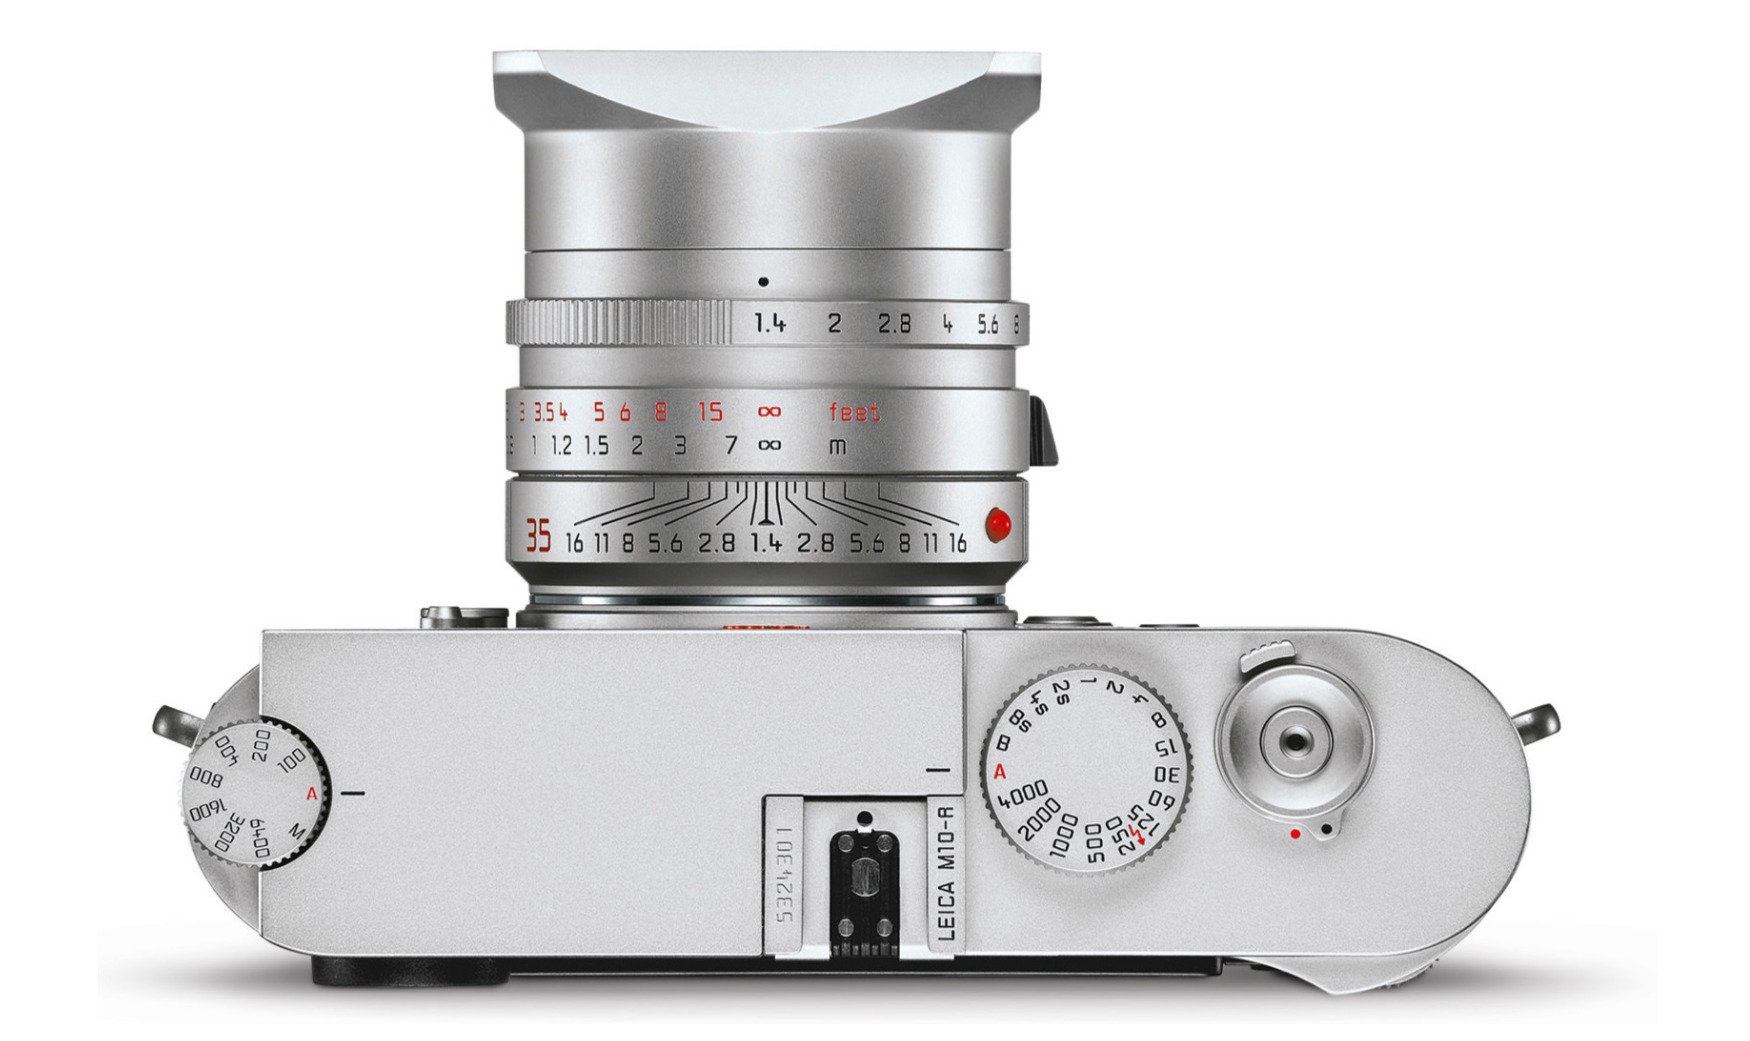 Máy ảnh Leica M10-R sẽ ra mắt vào tối nay với giá bán khoảng 8295 USD